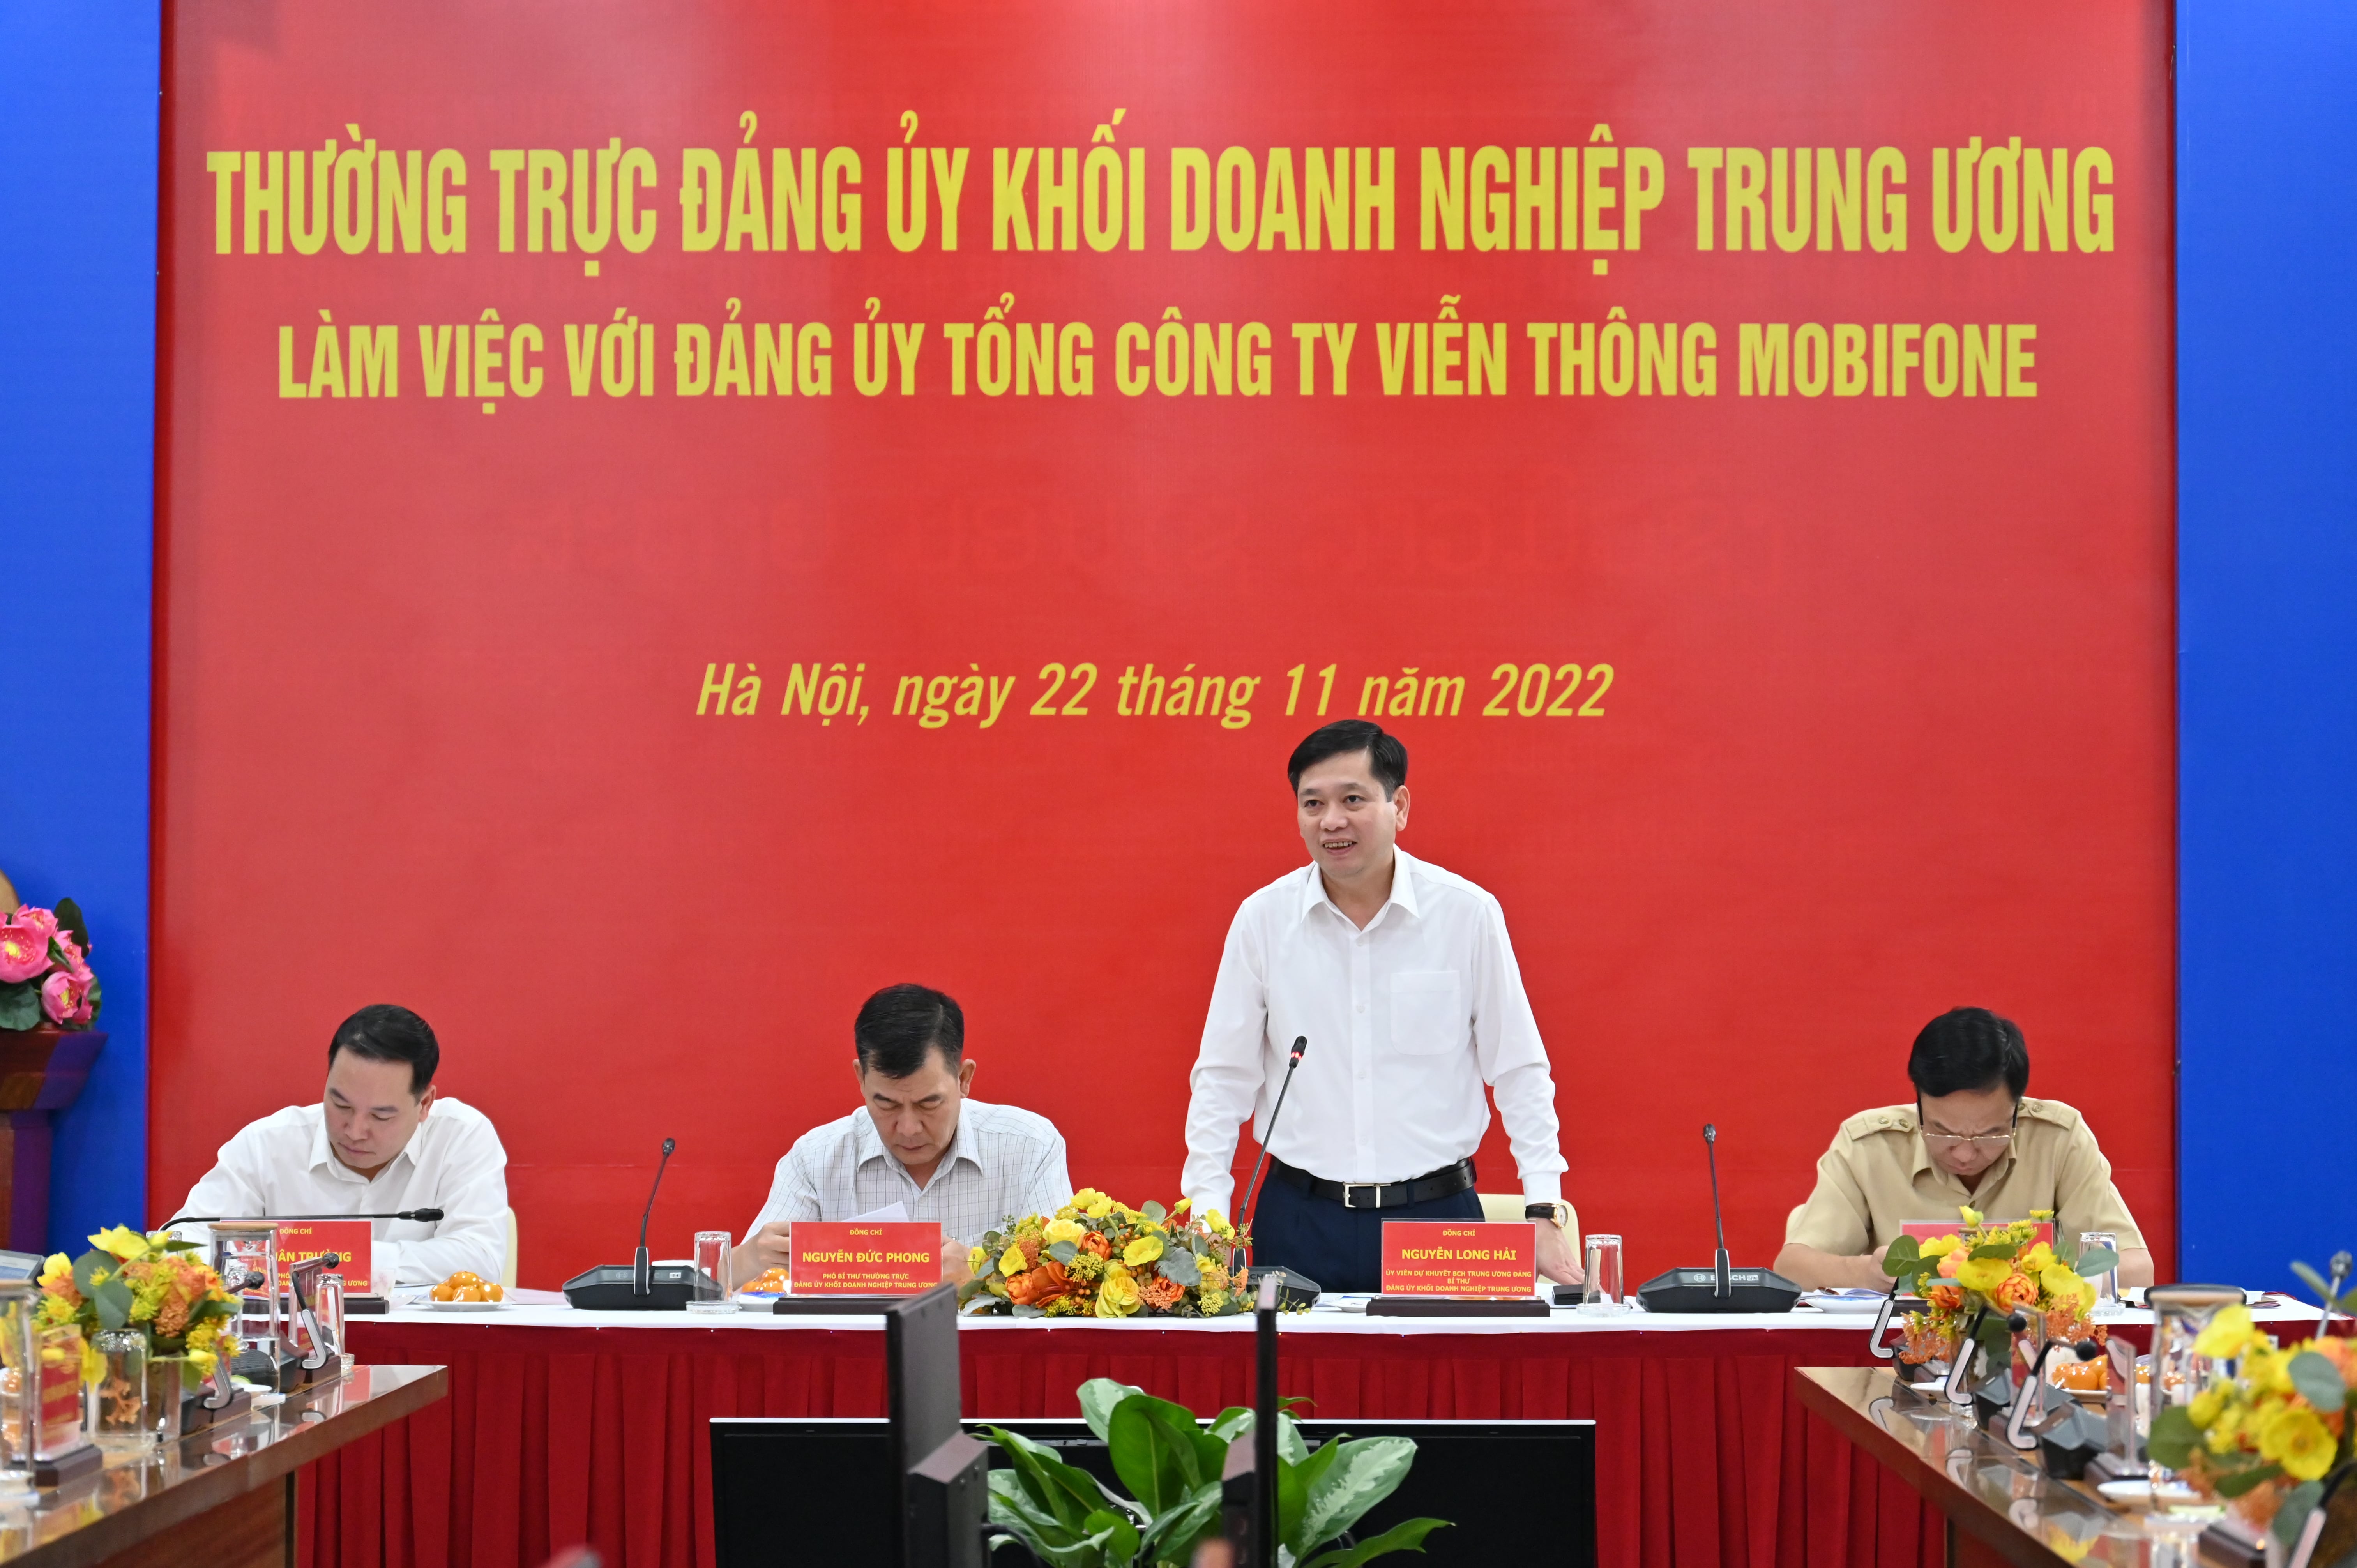 Đ/c Nguyễn Long Hải - Ủy viên dự khuyết BCH Trung ương, Bí thư Đảng ủy Khối DNTW làm việc với Đảng ủy TCT Viễn thông MobiFone